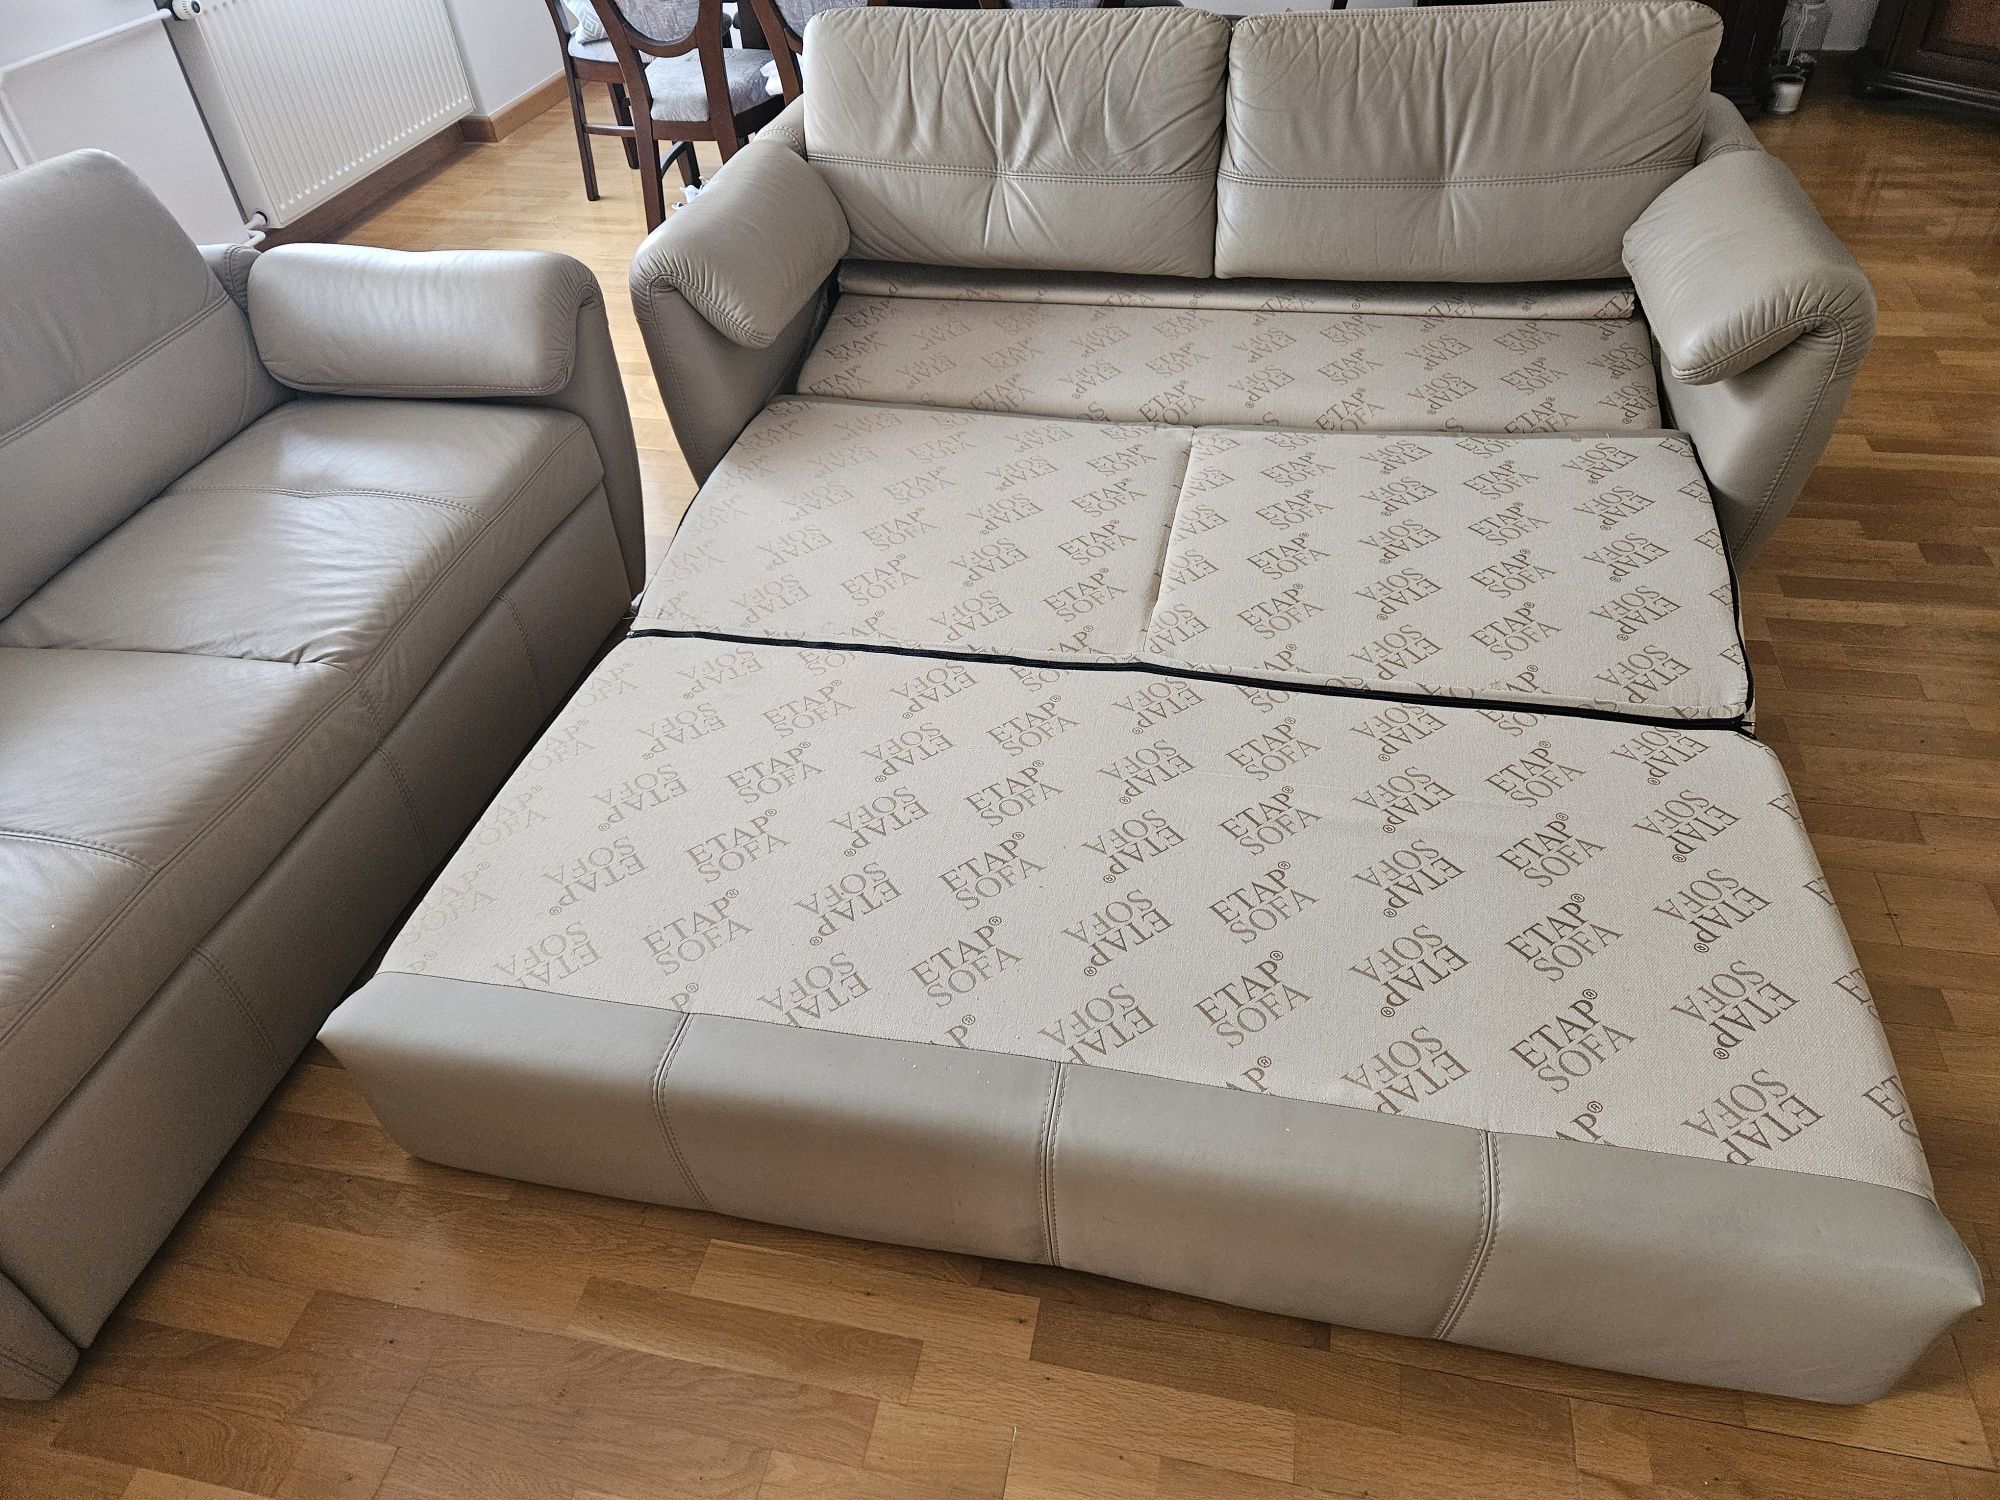 Sofa, kanapa 3+2 ze skóry naturalnej